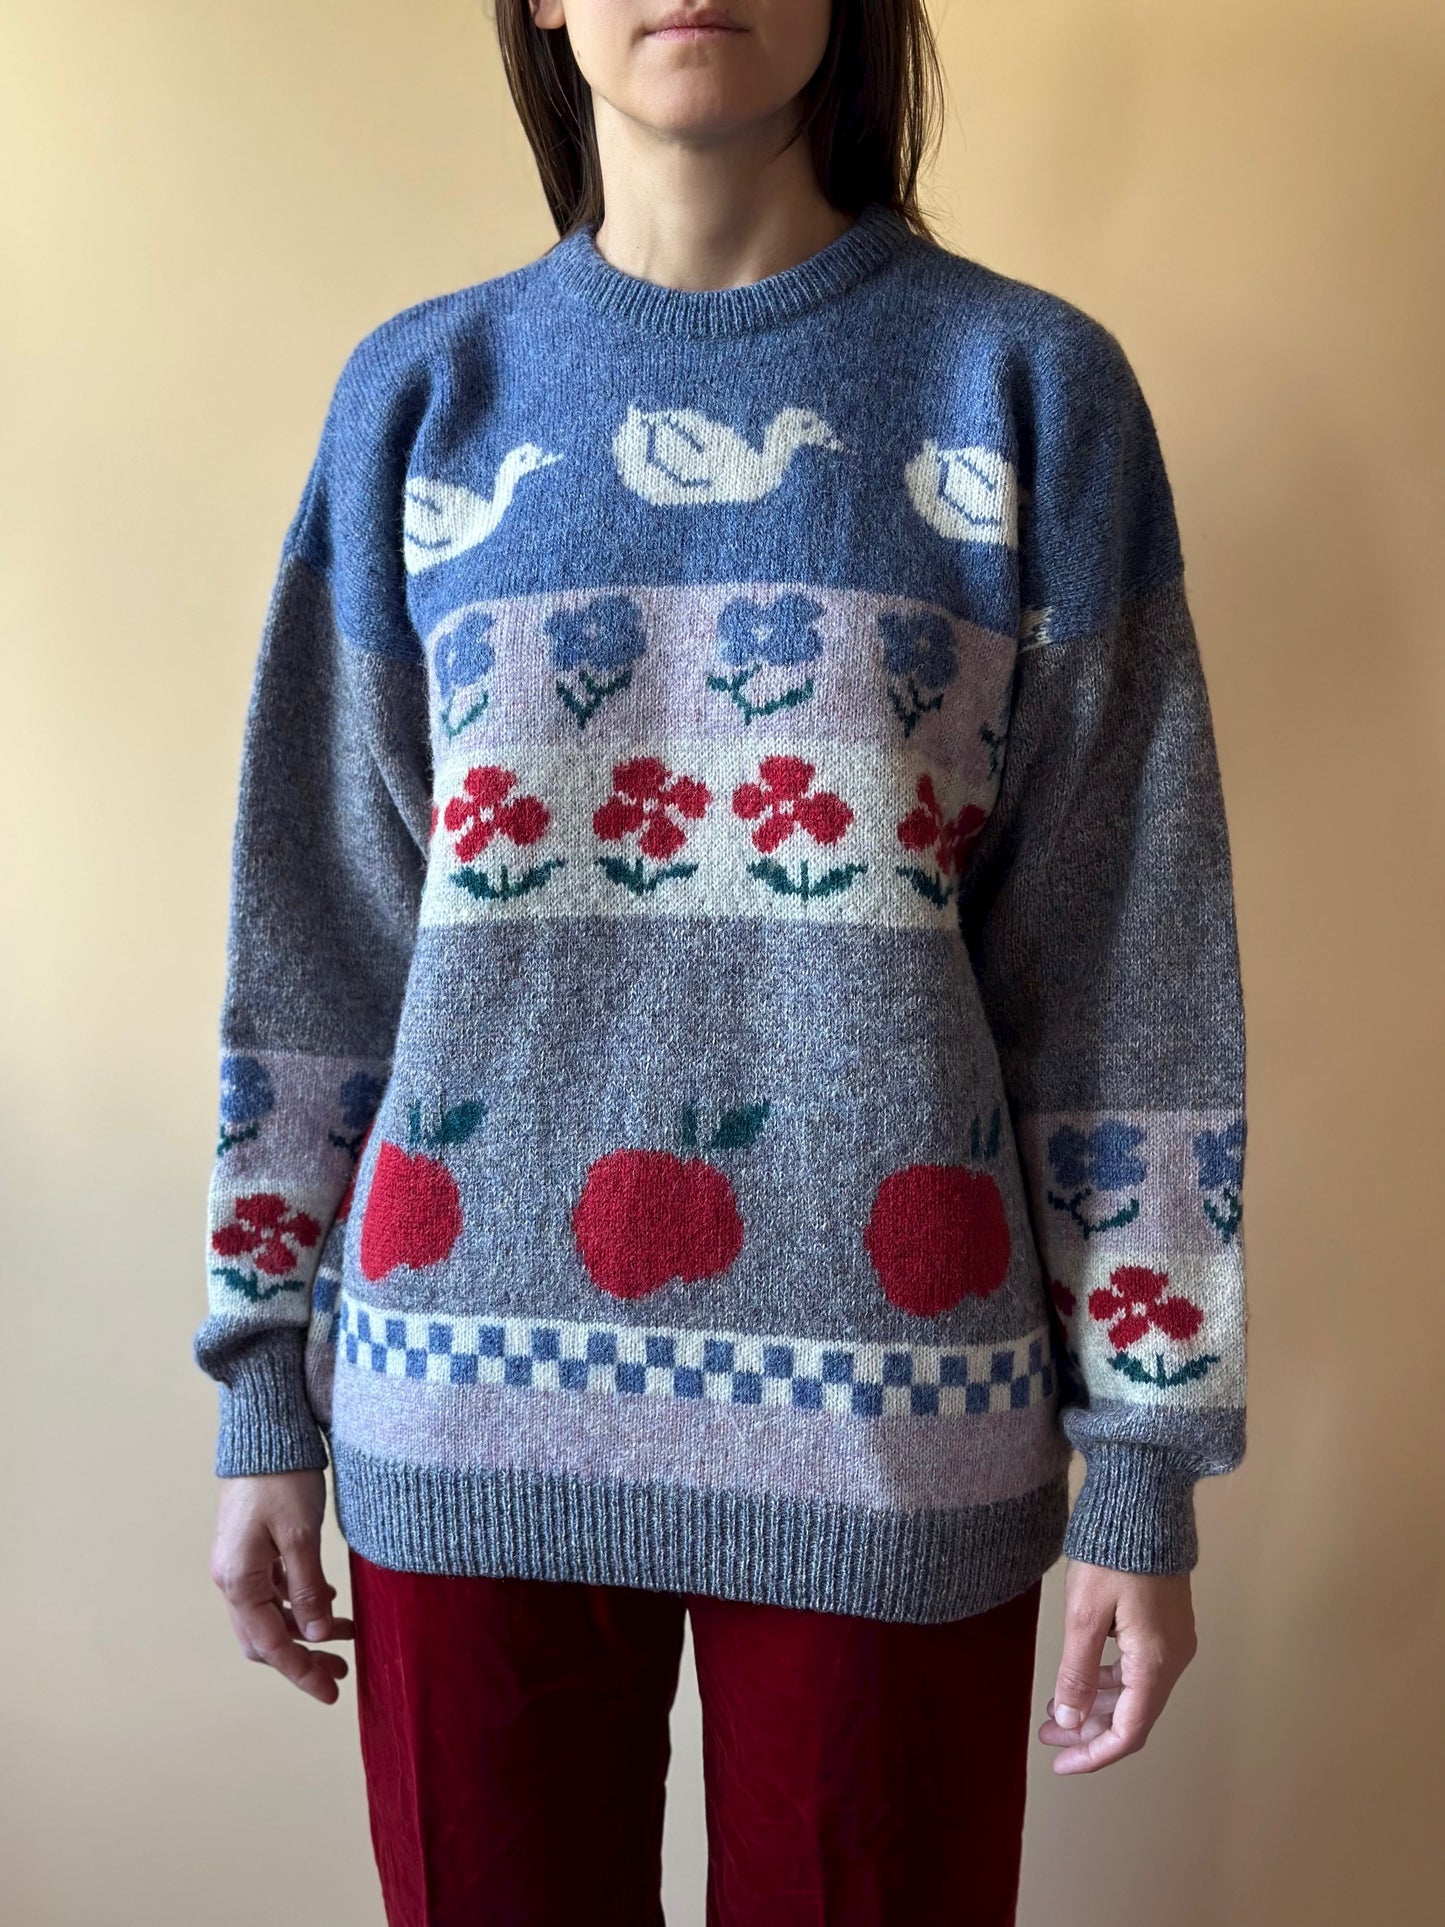 Rare 100% Wool Irish Scenery Sweater